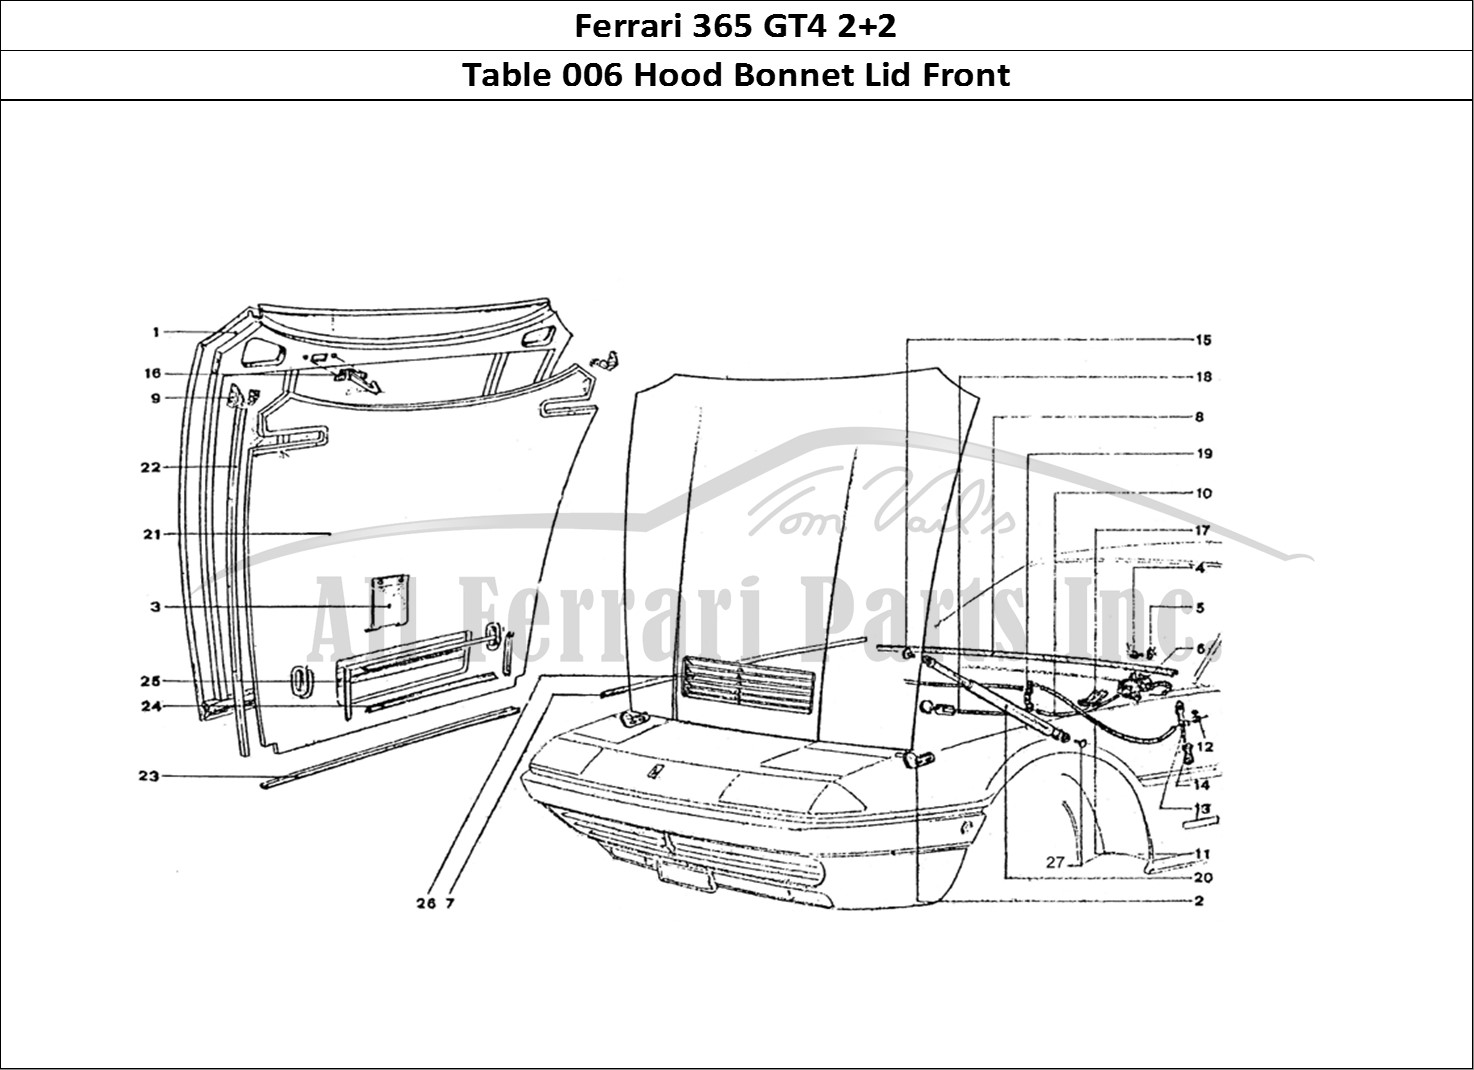 Ferrari Parts Ferrari 365 GT4 2+2 Coachwork Page 006 Front Bonnet